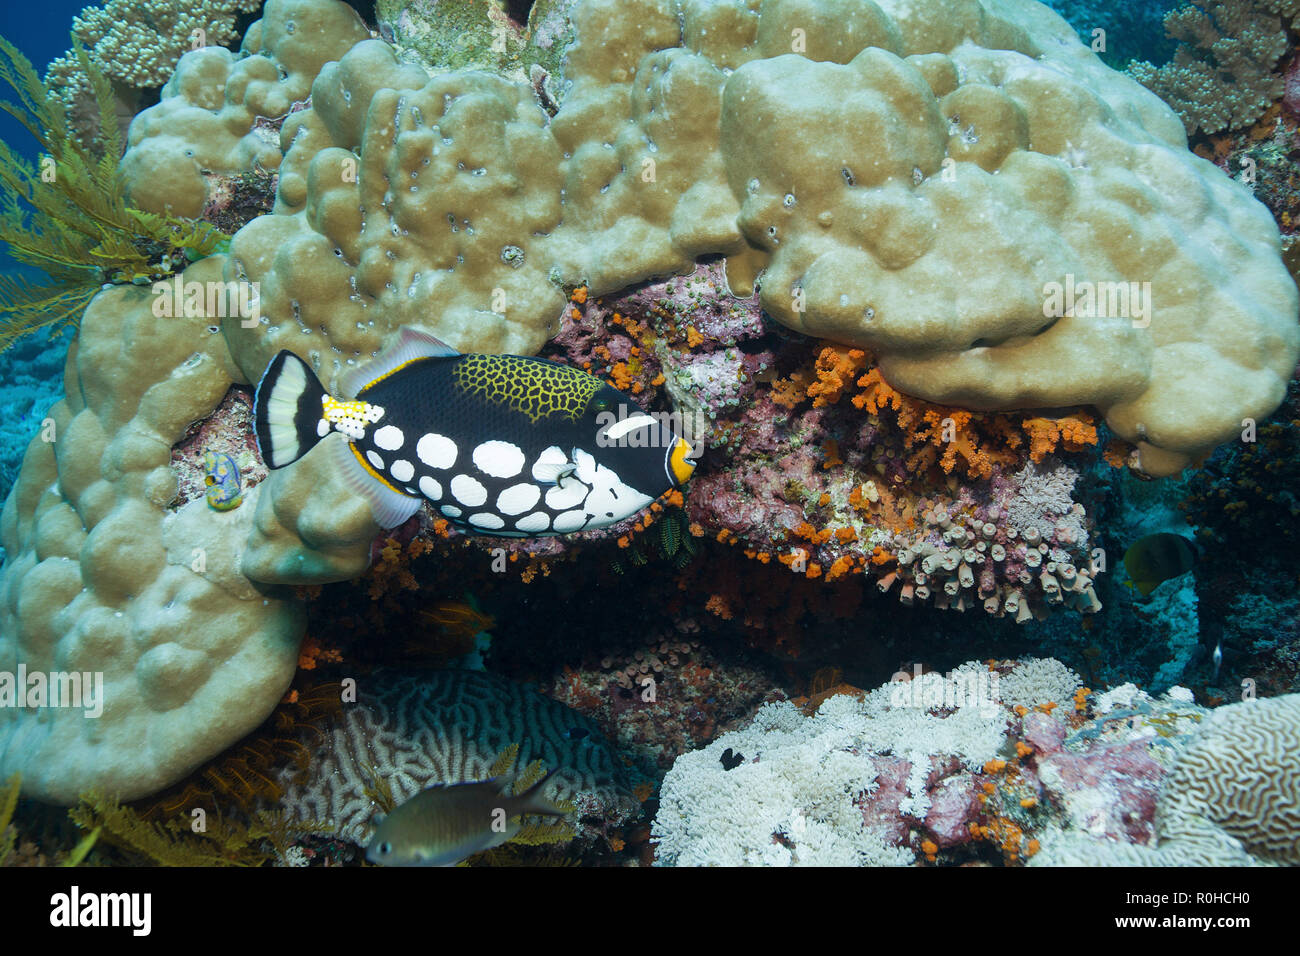 Leoparden-Drückerfisch (Balistoides conspicillum), Bali, Indonesien | Clown triggerfish (Balistoides conspicillum), Bali, Indonesia Stock Photo